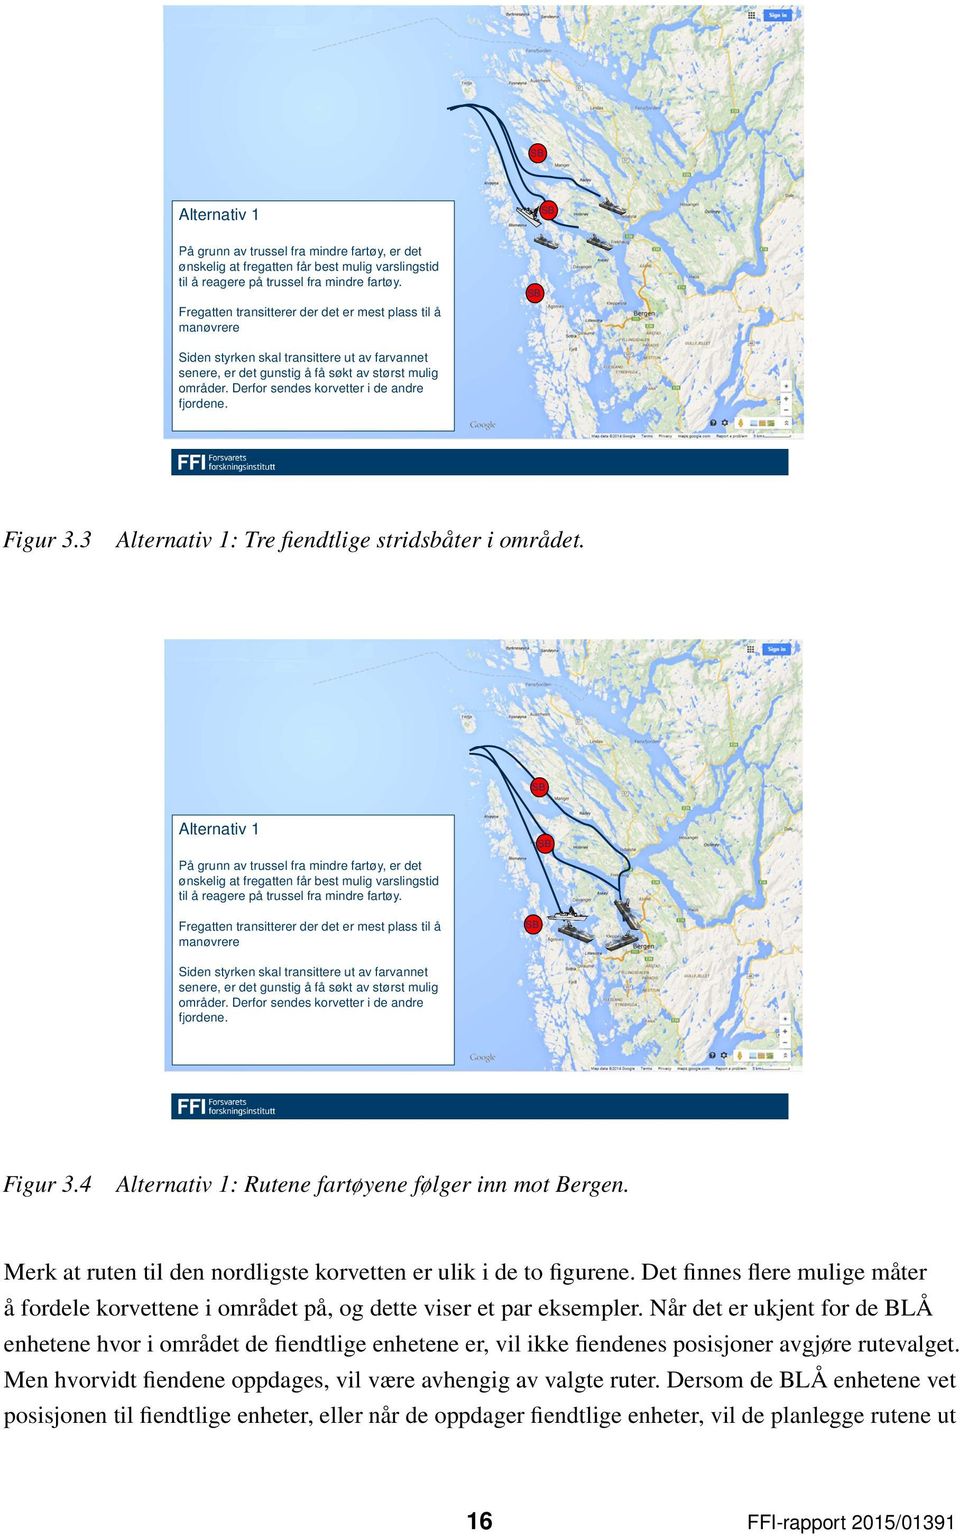 Derfor sendes korvetter i de andre fjordene. Figur 3.3 Alternativ 1: Tre fiendtlige stridsbåter i området.   Derfor sendes korvetter i de andre fjordene. Figur 3.4 Alternativ 1: Rutene fartøyene følger inn mot Bergen.